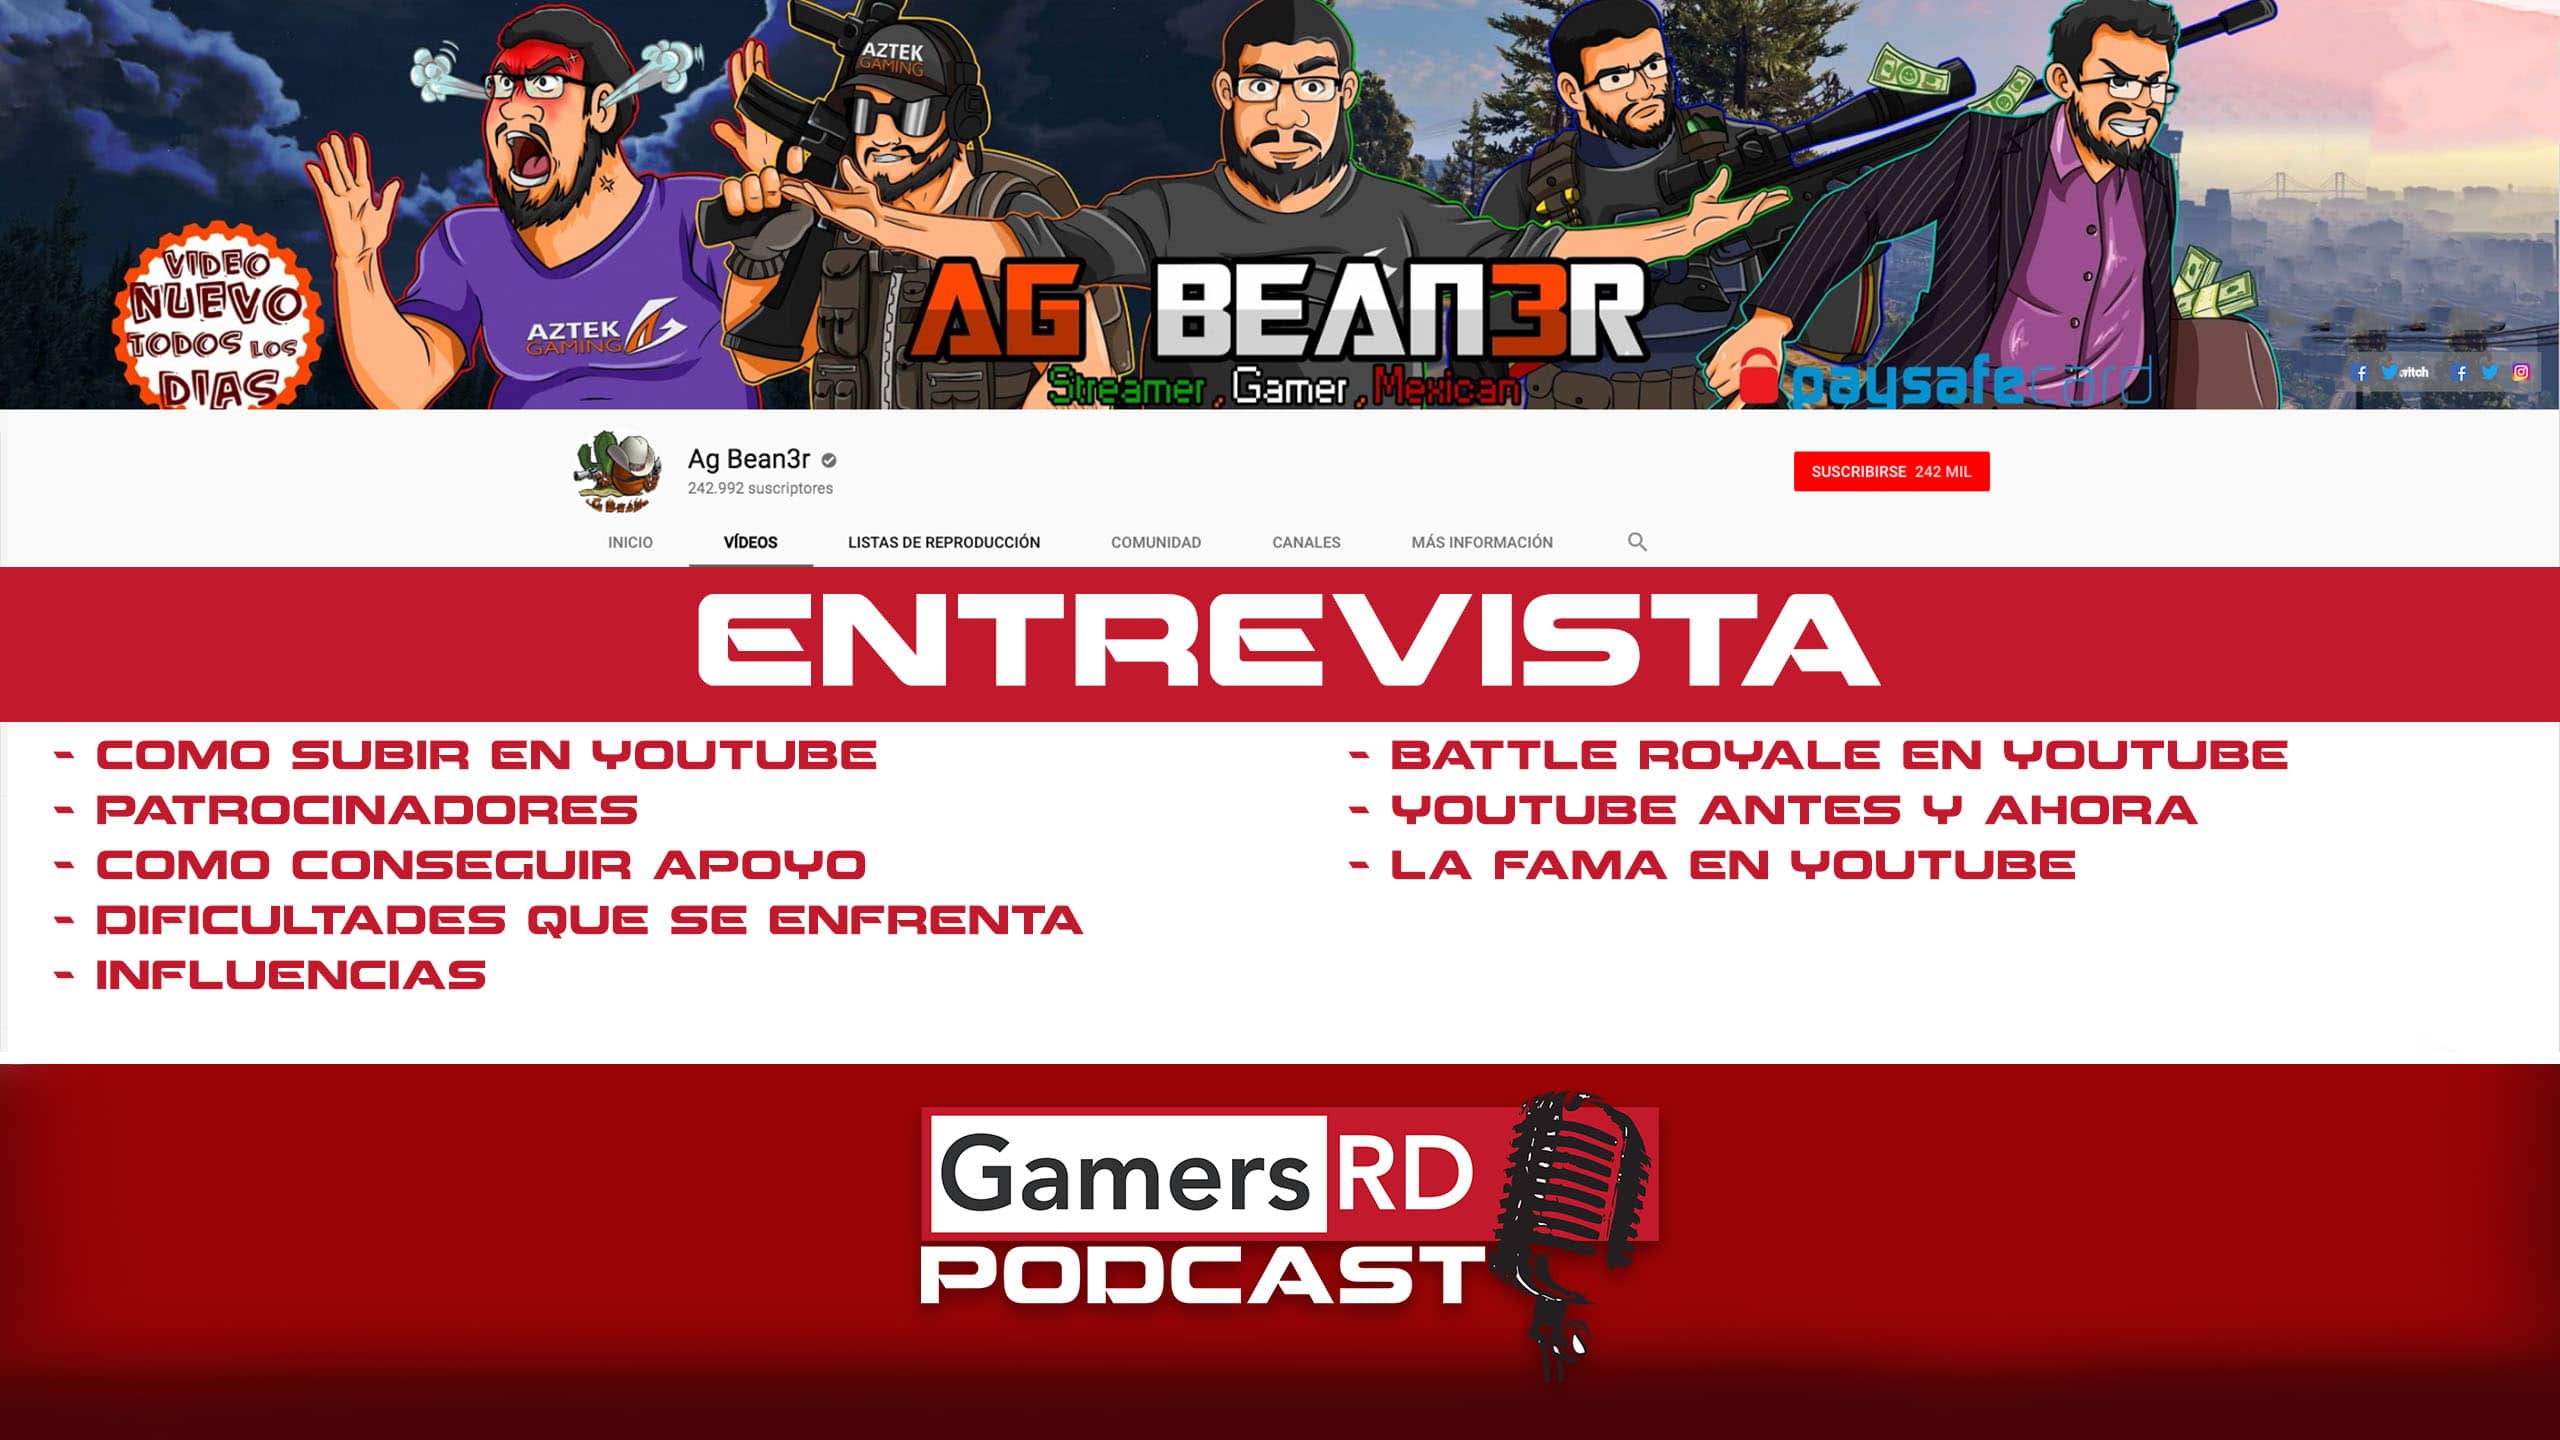 GamersRD Podcast #35 AG Bean3r